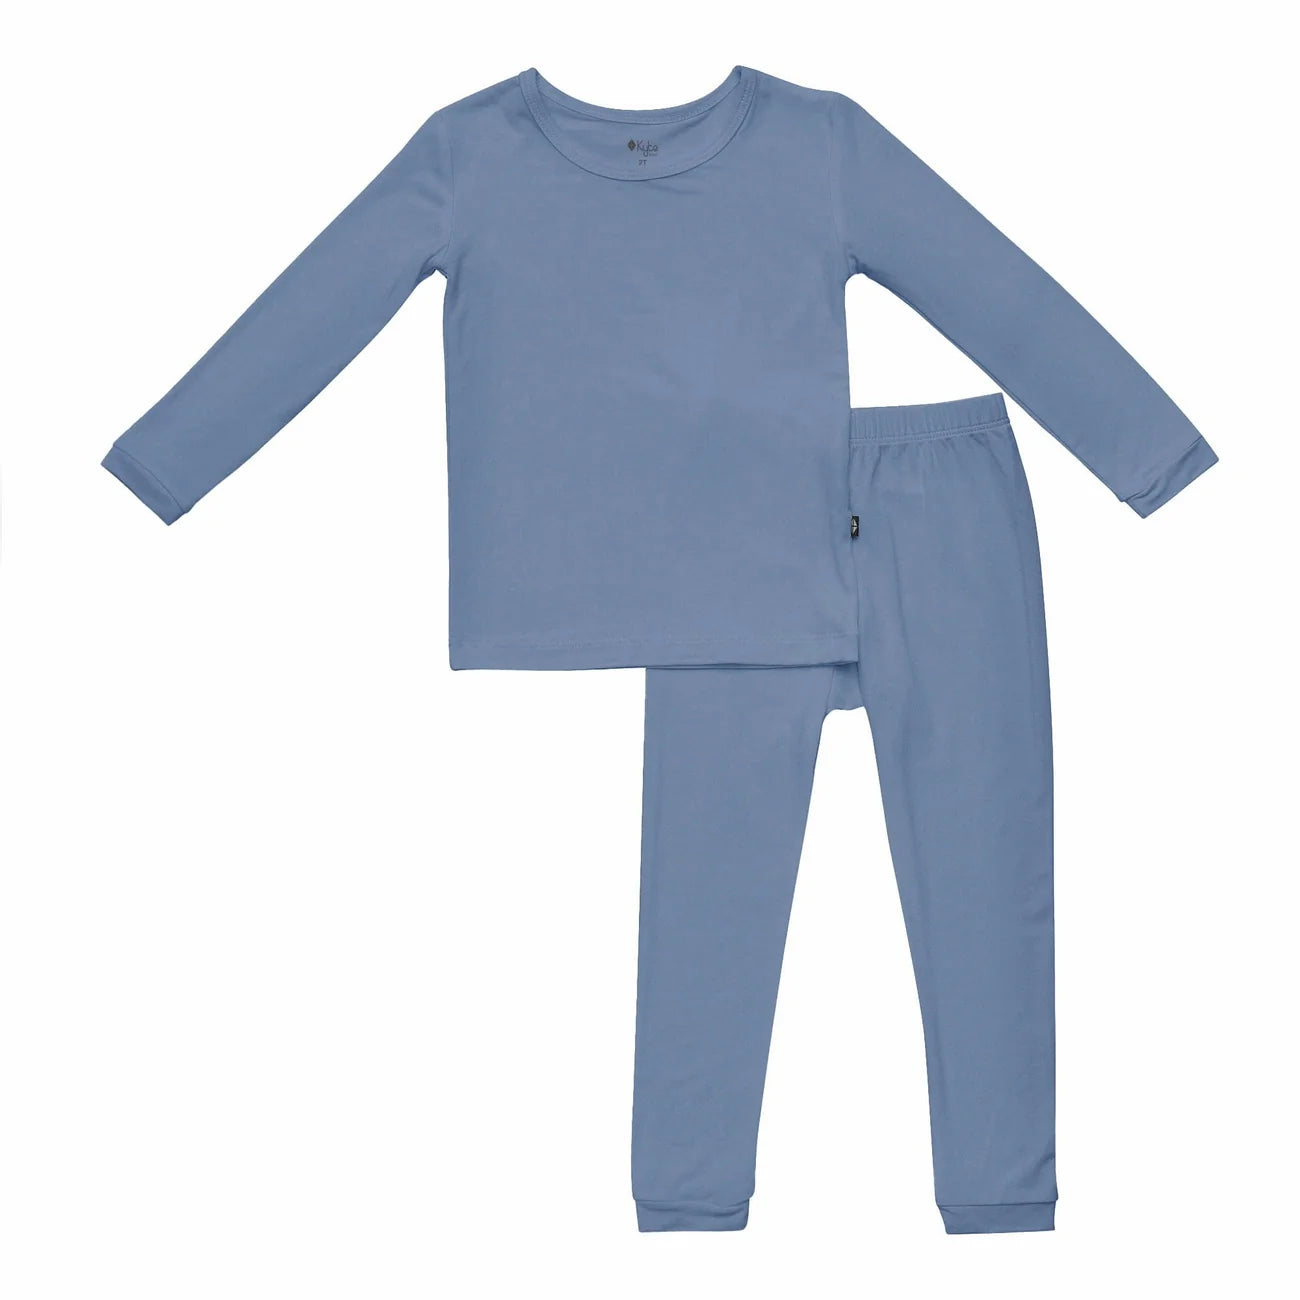 Toddler Pajama Set